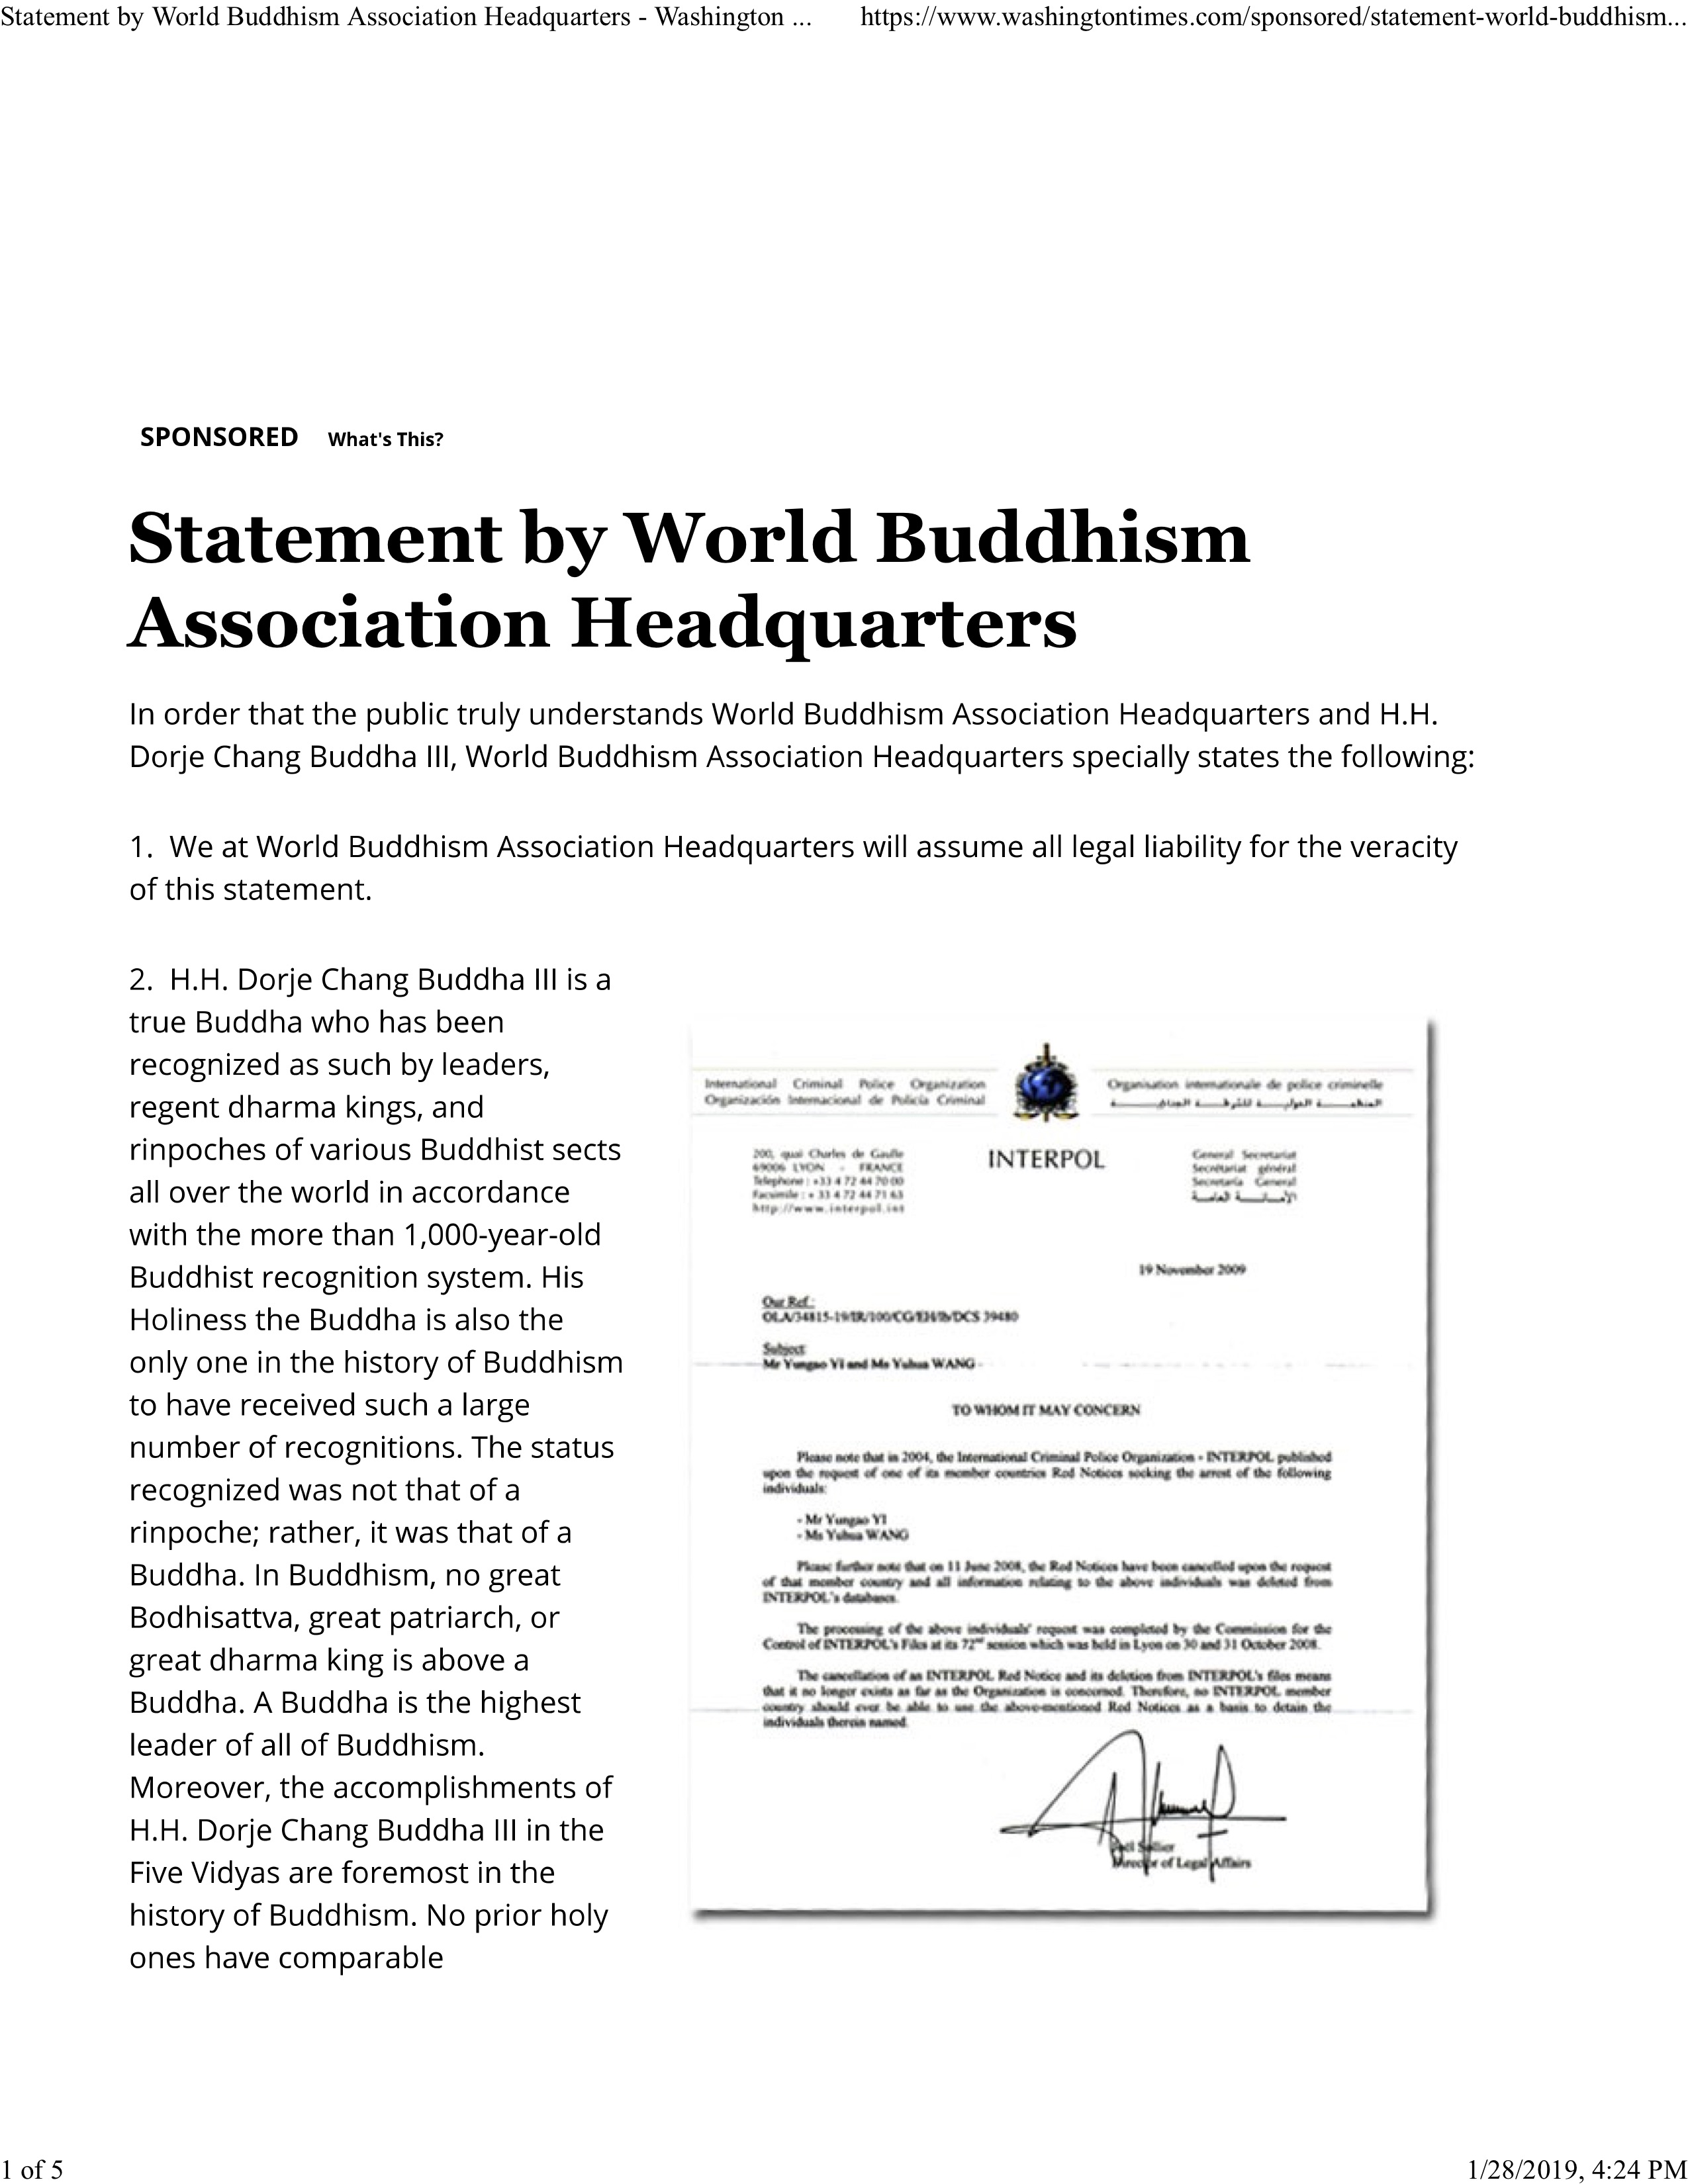 世界佛教總部聲明-華盛頓時報 2019-01-28